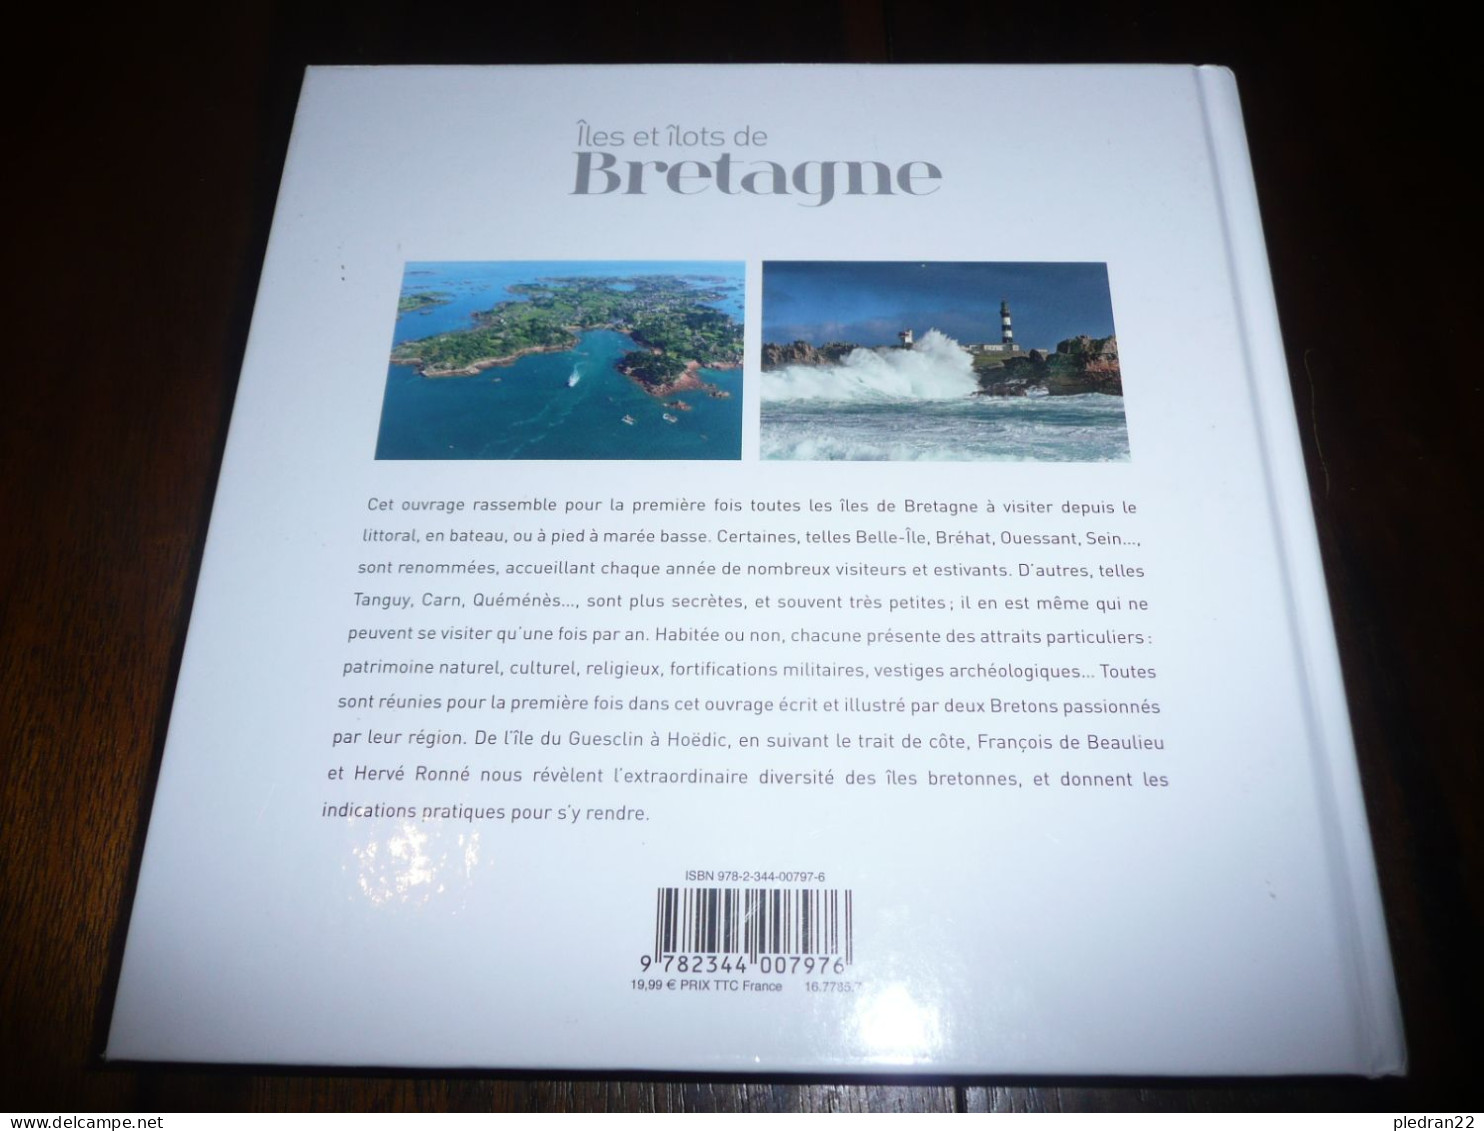 FRANCOIS DE BEAULIEU HERVE RONNE ILES ET ILOTS DE BRETAGNE EDITIONS GLENAT 2015 - Bretagne